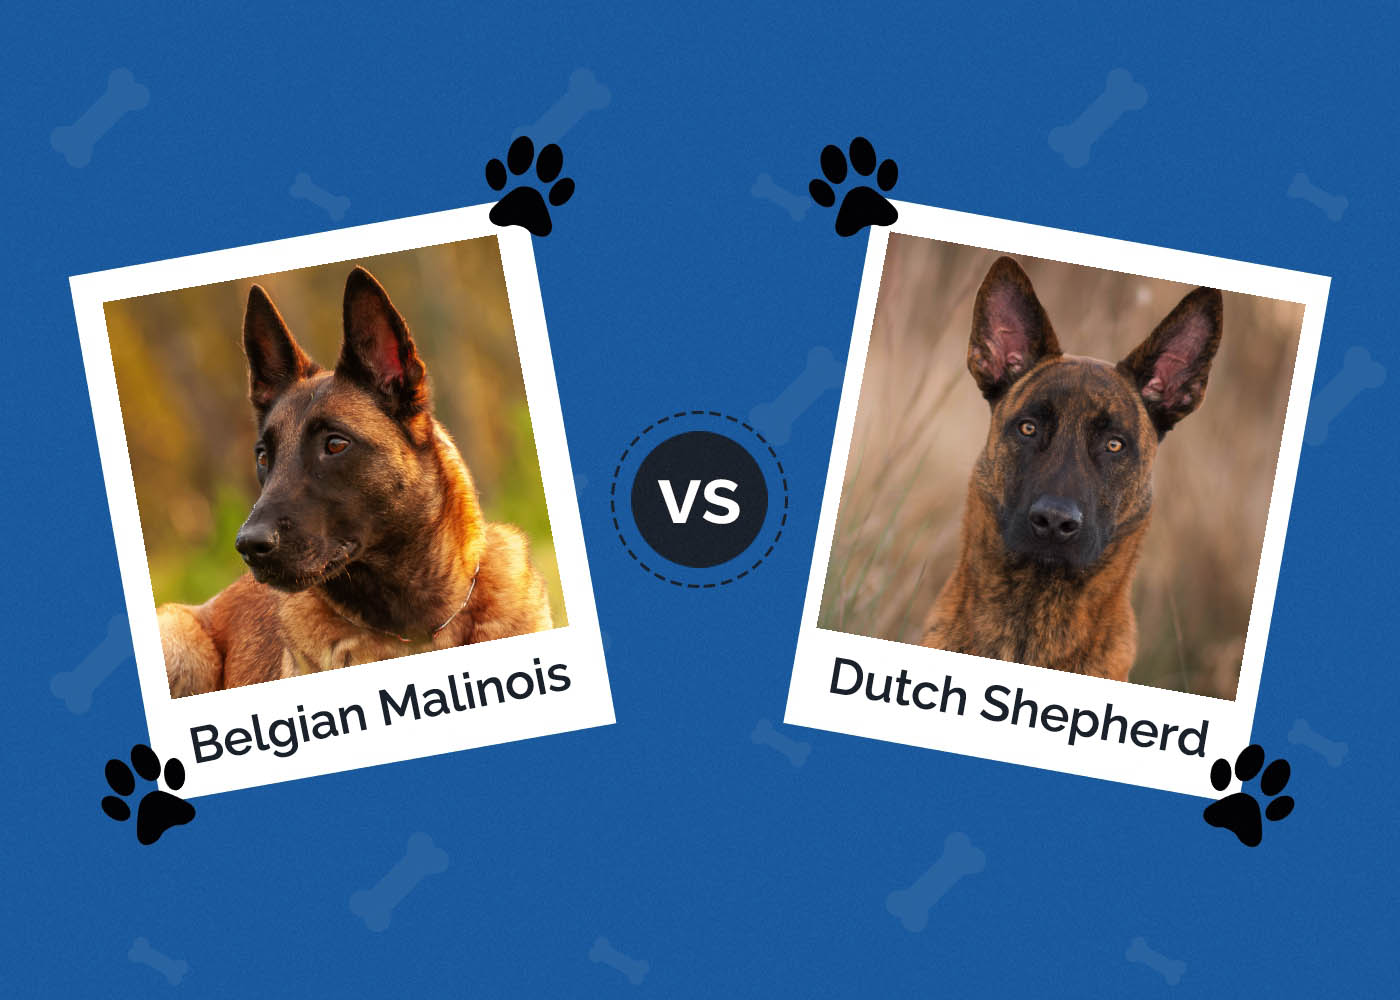 Belgian Malinois vs Dutch Shepherd